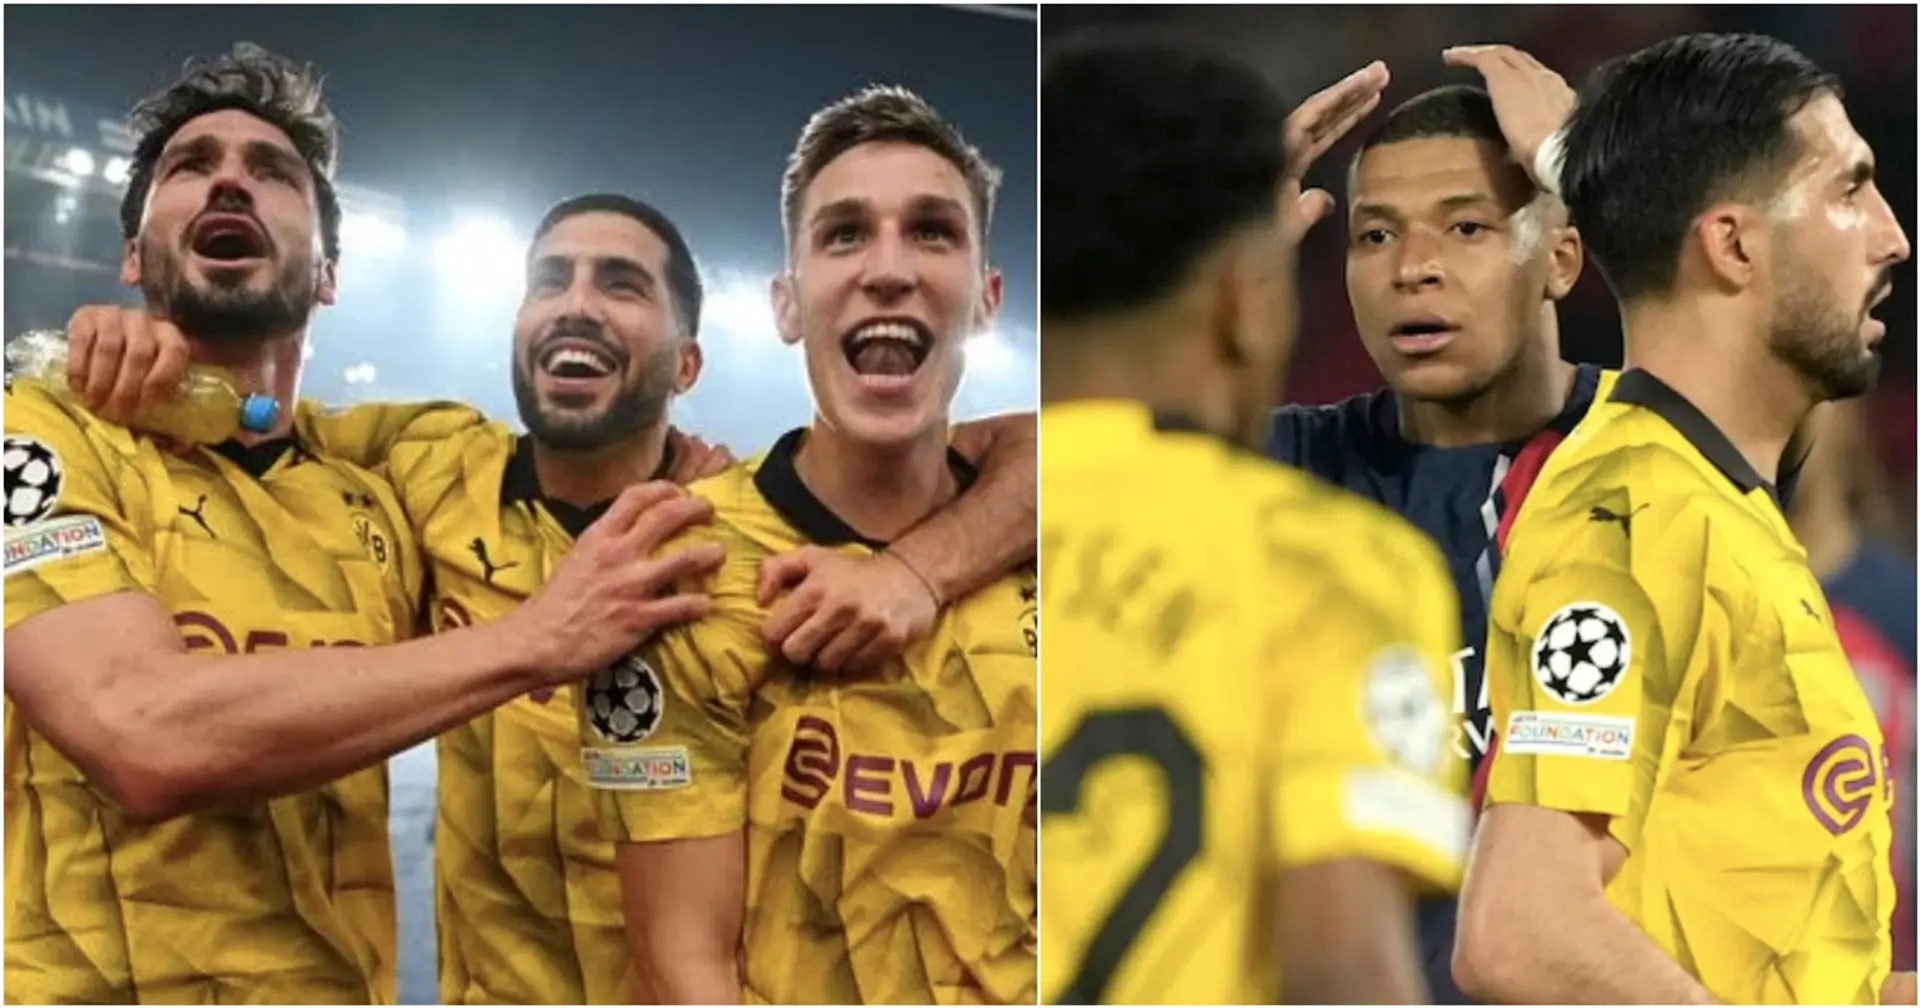 Quoten für Champions-League-Triumph von Borussia Dortmund sinken nach Sieg in Paris